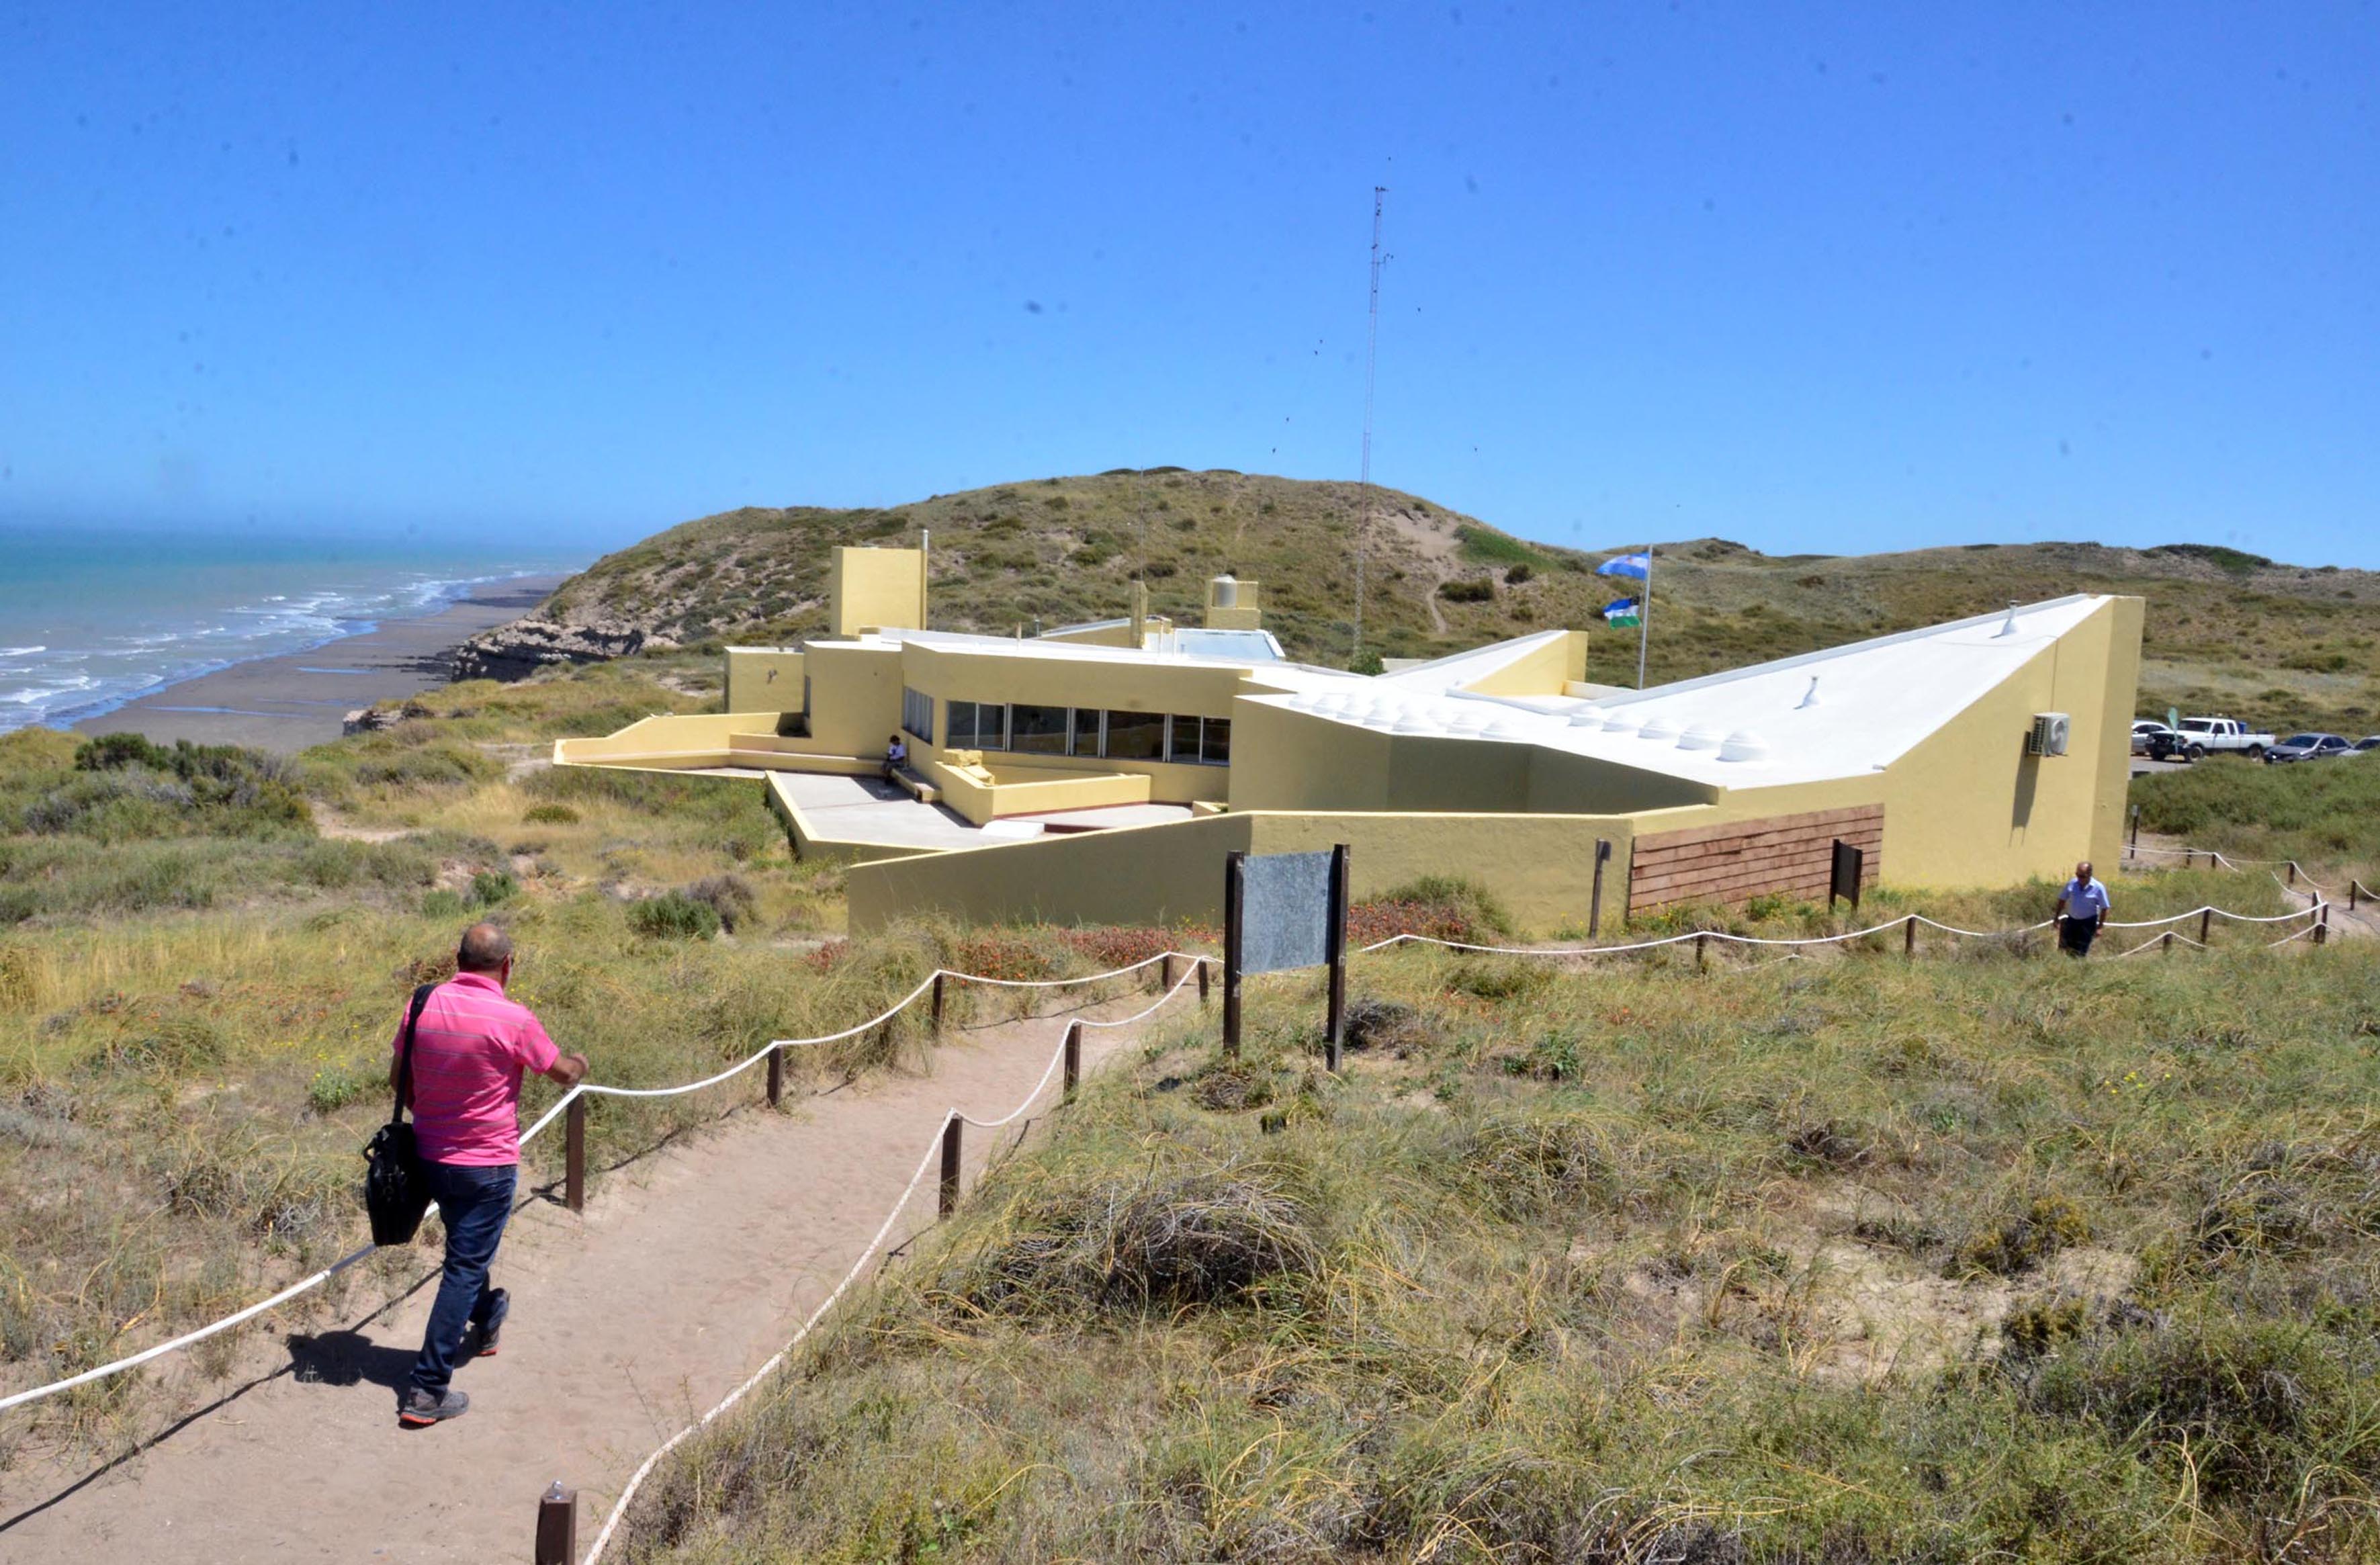 El Centro de Interpretación de Punta Bermeja se encuentra cerrado desde el inicio de la pandemia. Foto: Marcelo Ochoa